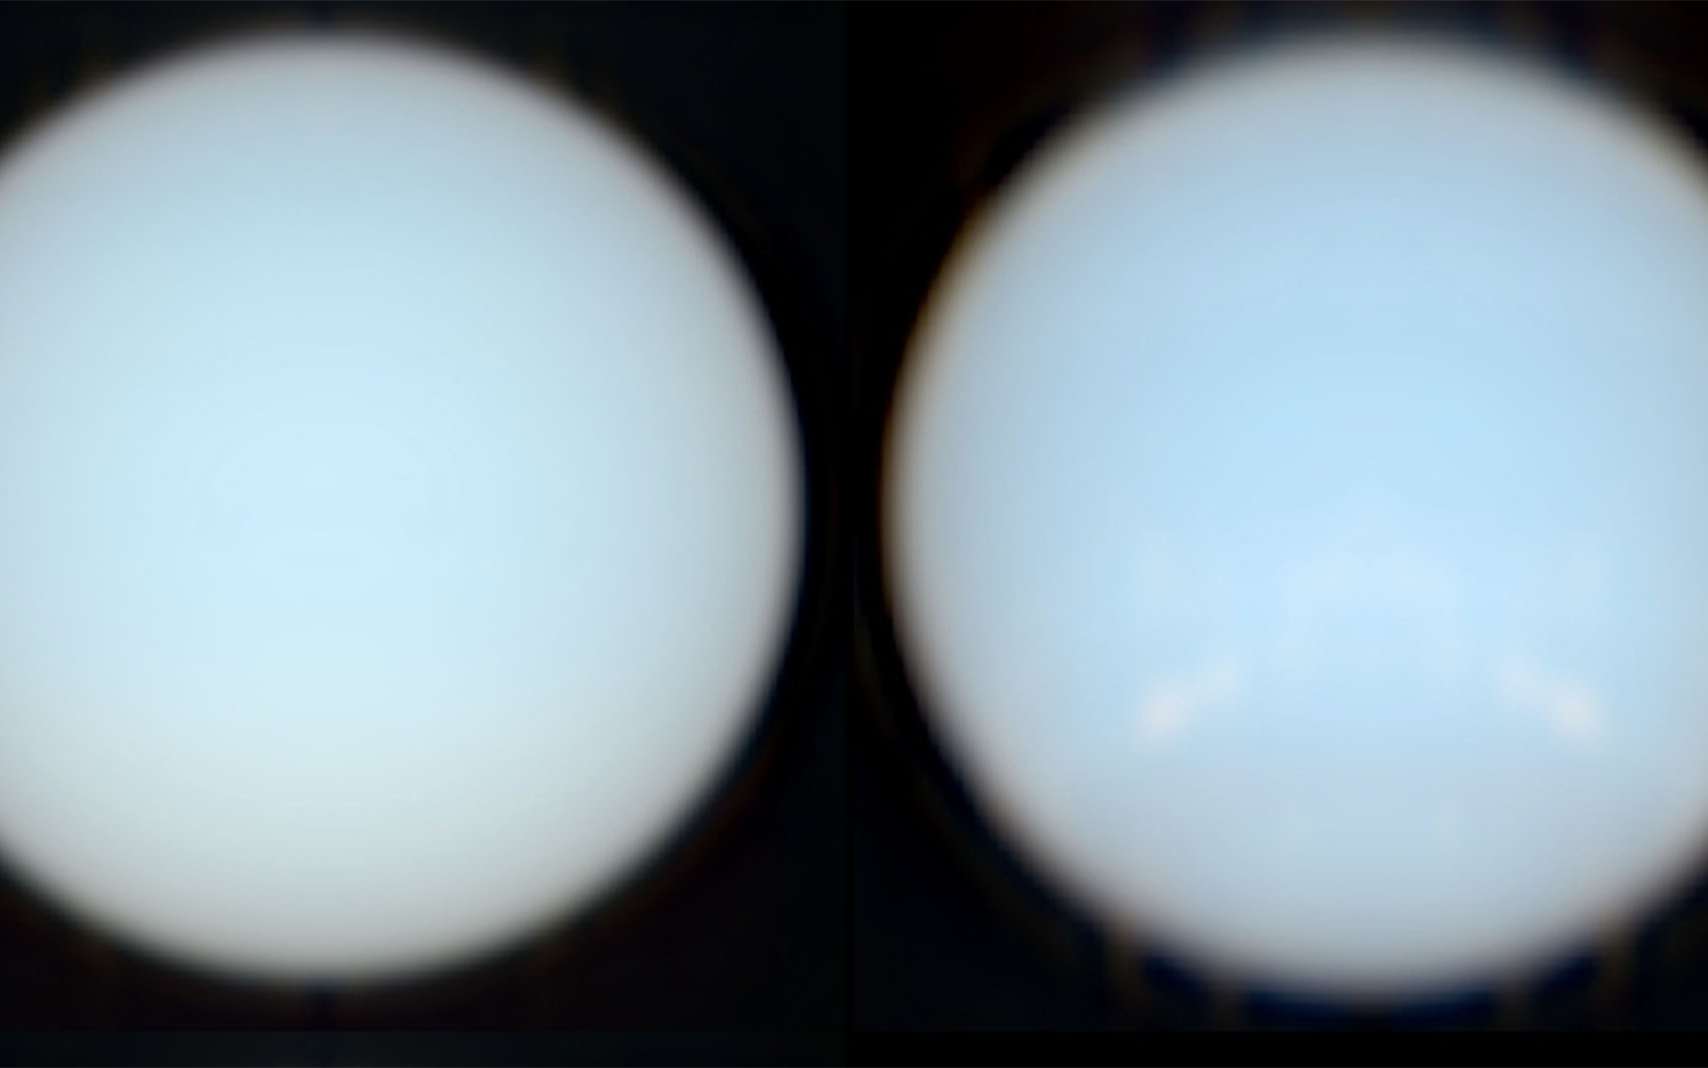 Les vraies couleurs d'Uranus et de Neptune révélées !